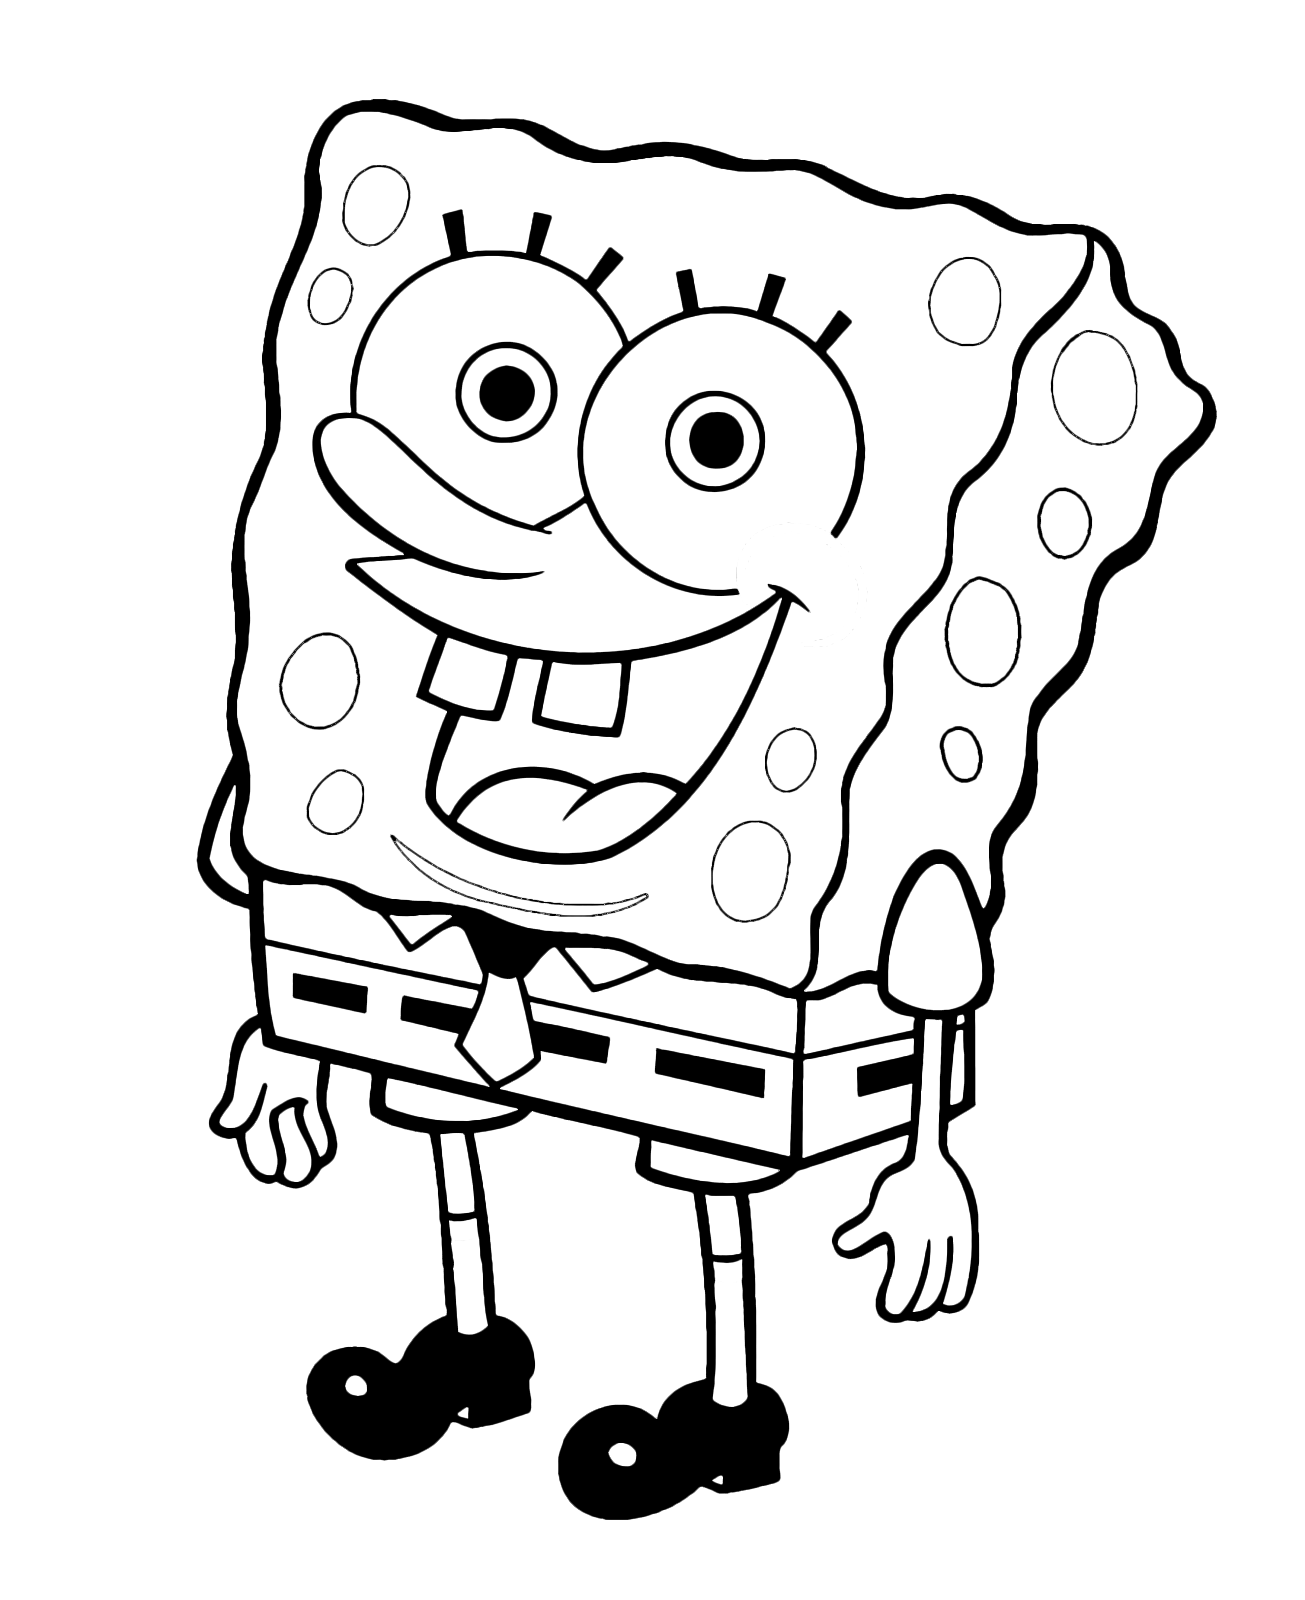 Disegni di SpongeBob da colorare